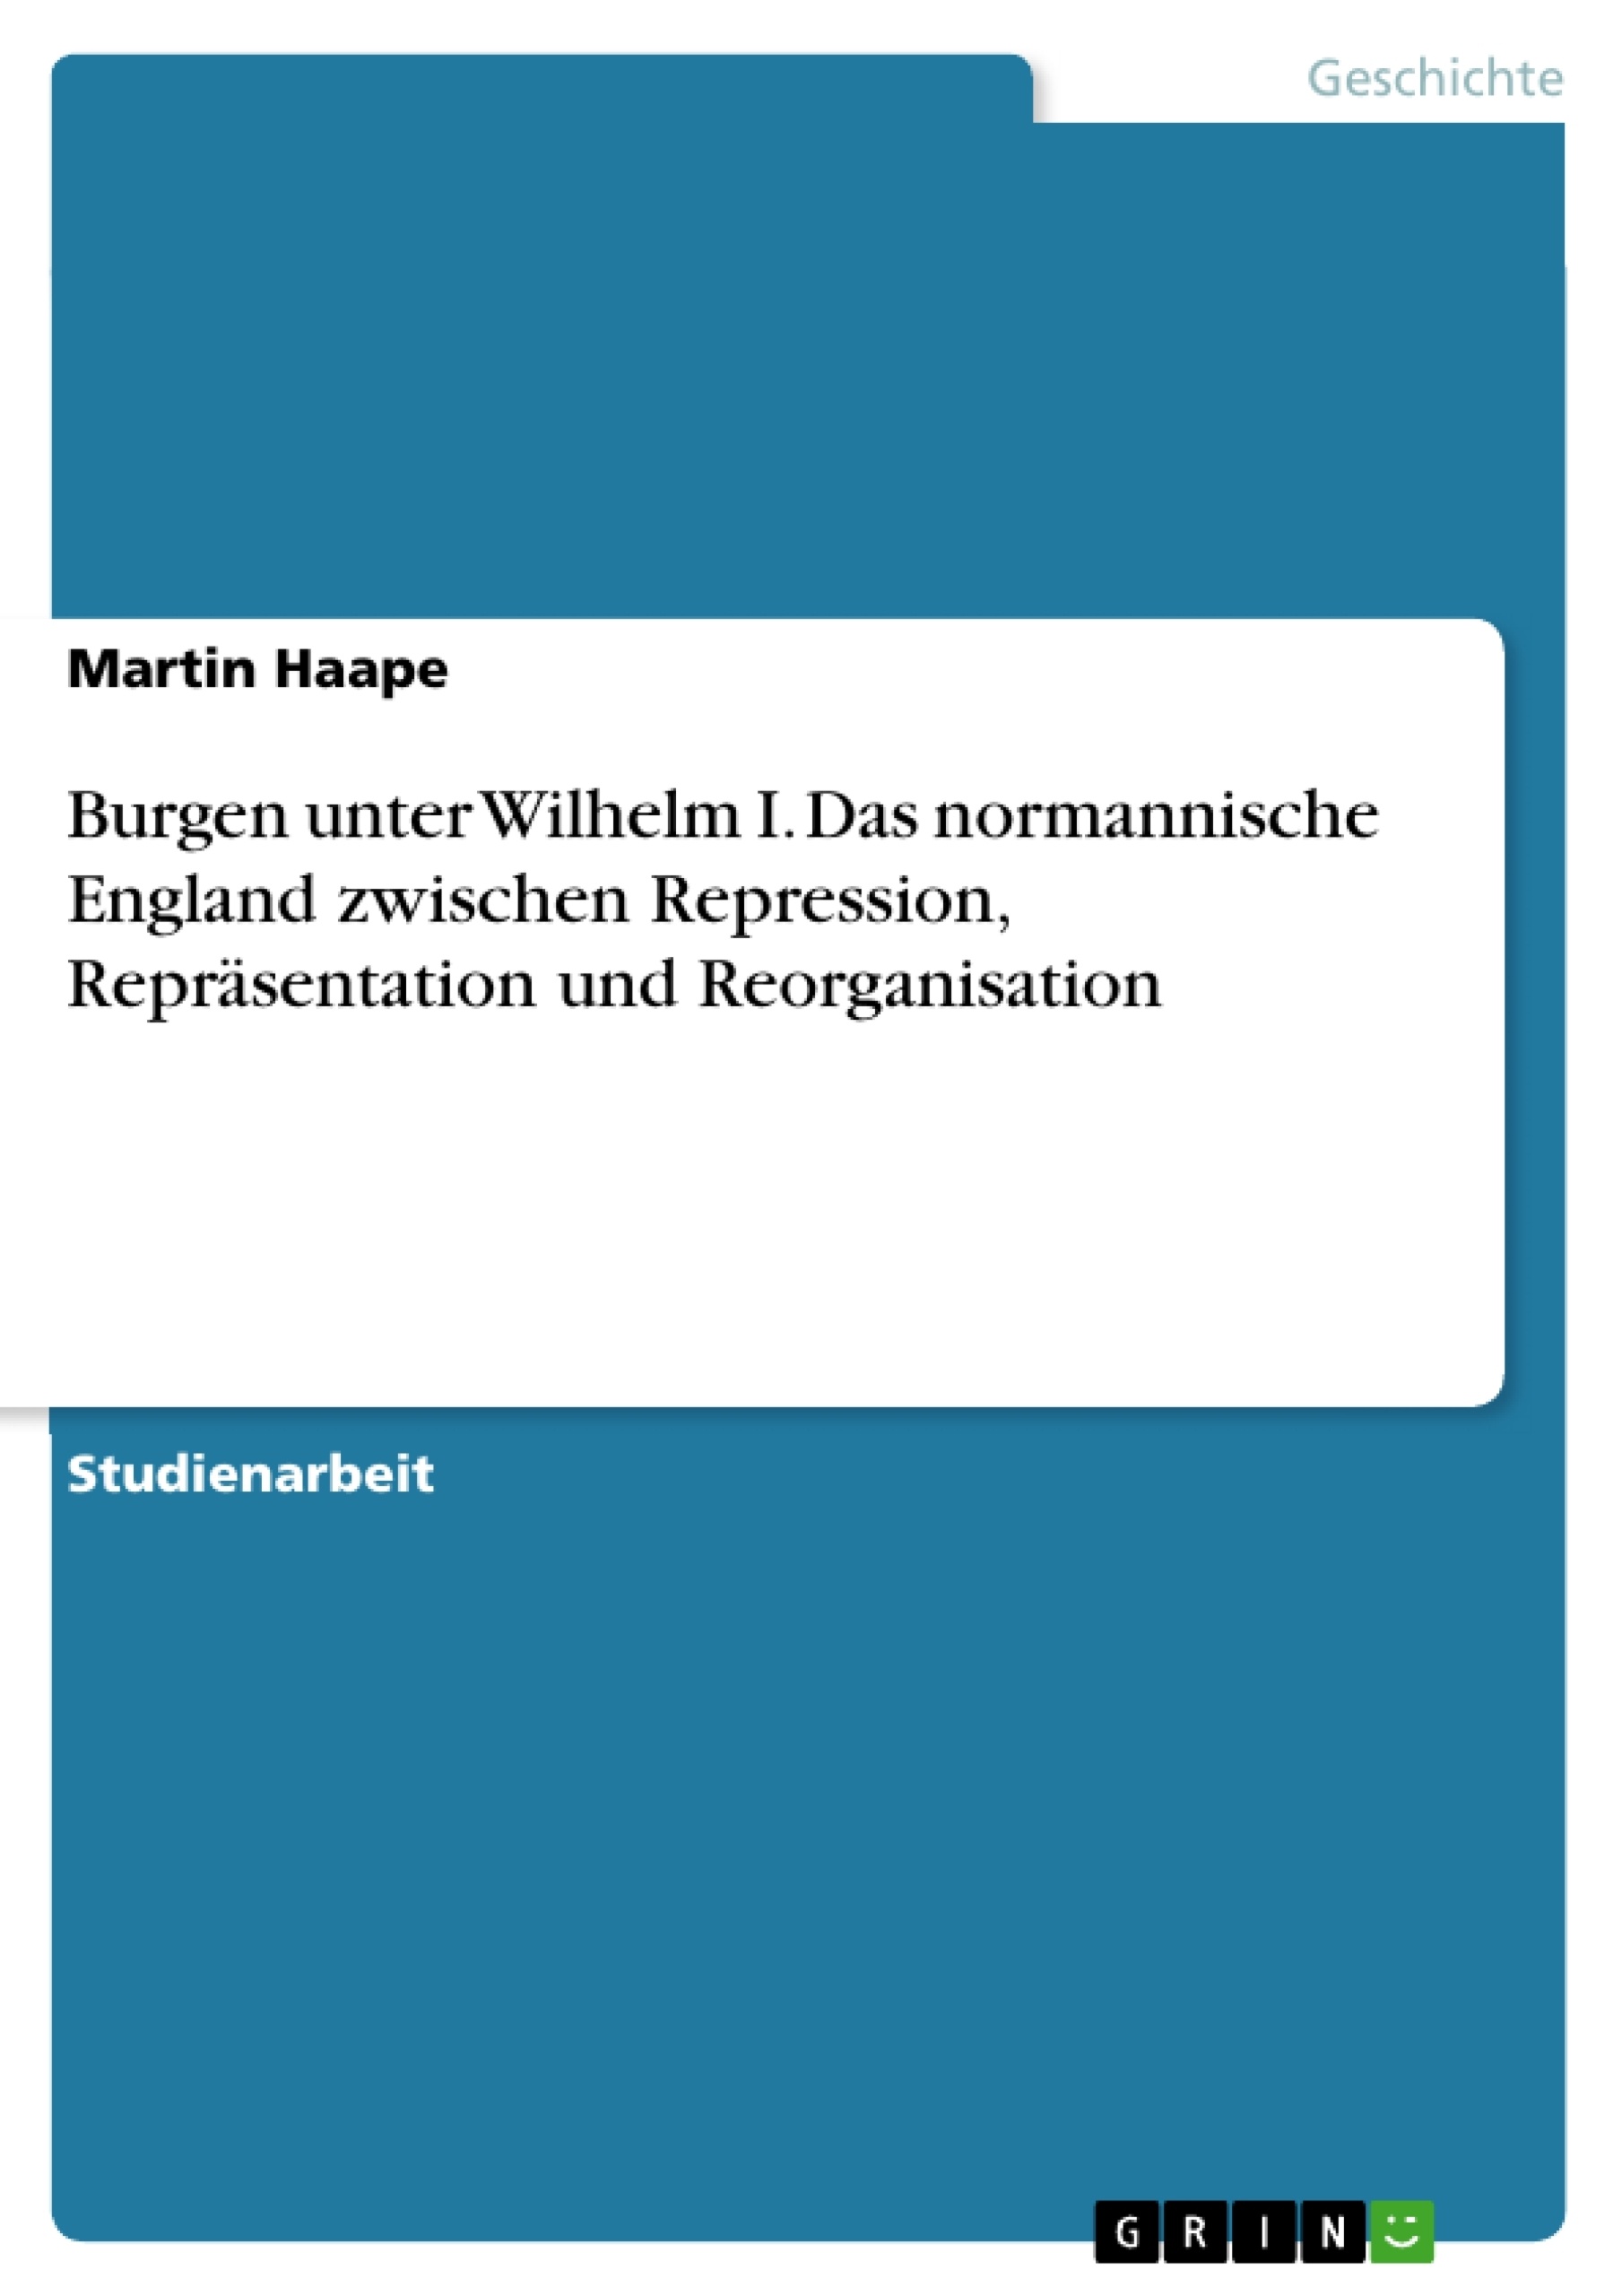 Title: Burgen unter Wilhelm I. Das normannische England zwischen Repression, Repräsentation und Reorganisation